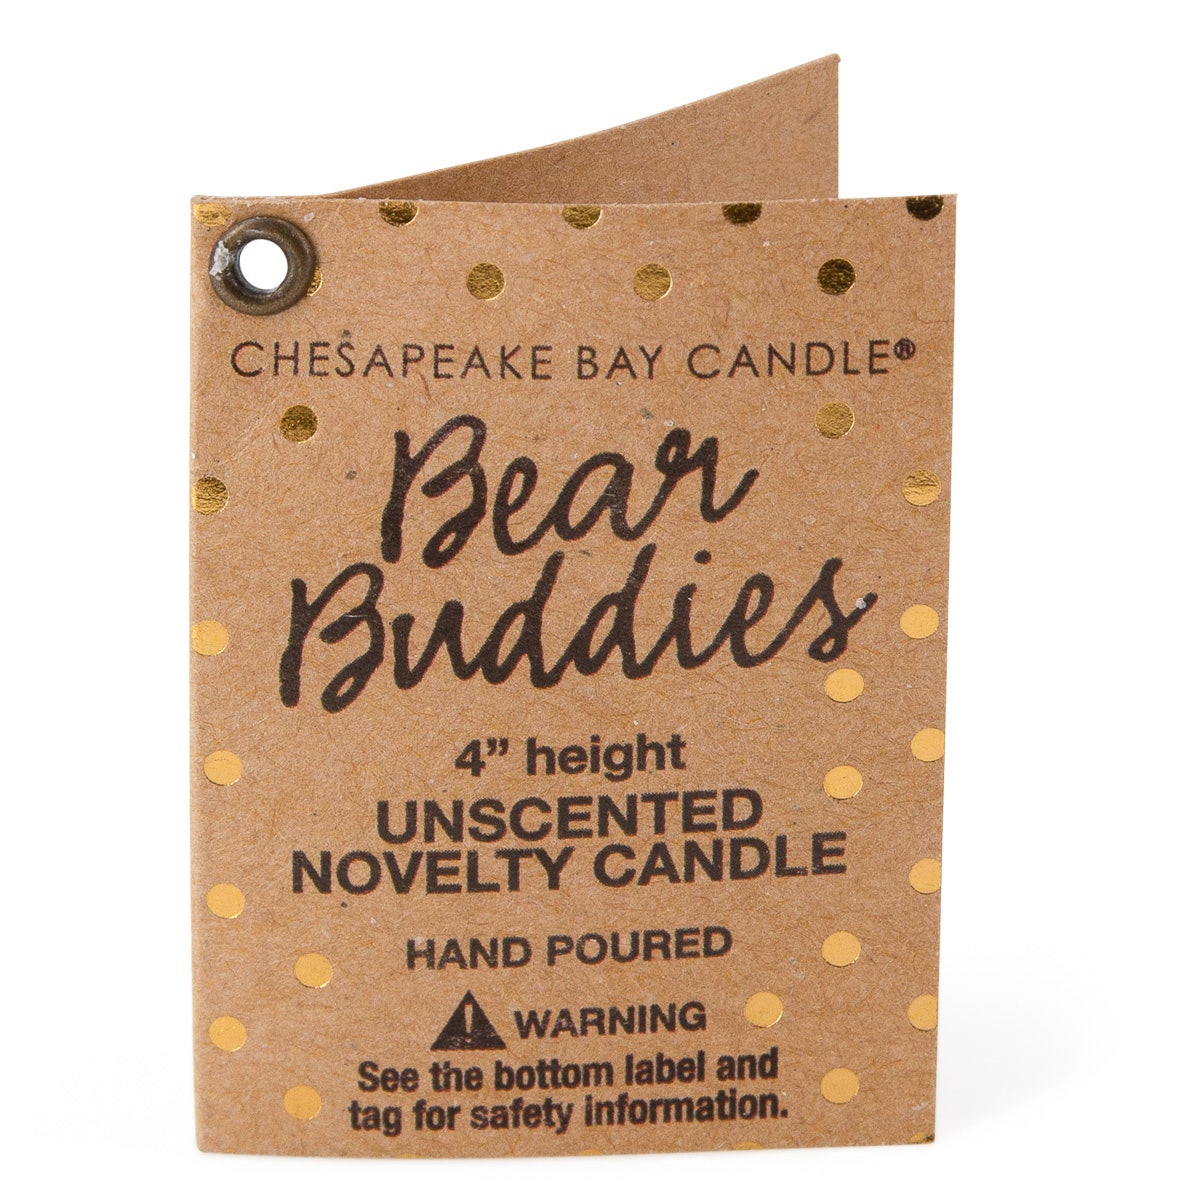 Chesapeake Bay Bear Buddies Teddy Bear Candle – 9oz, Unscented